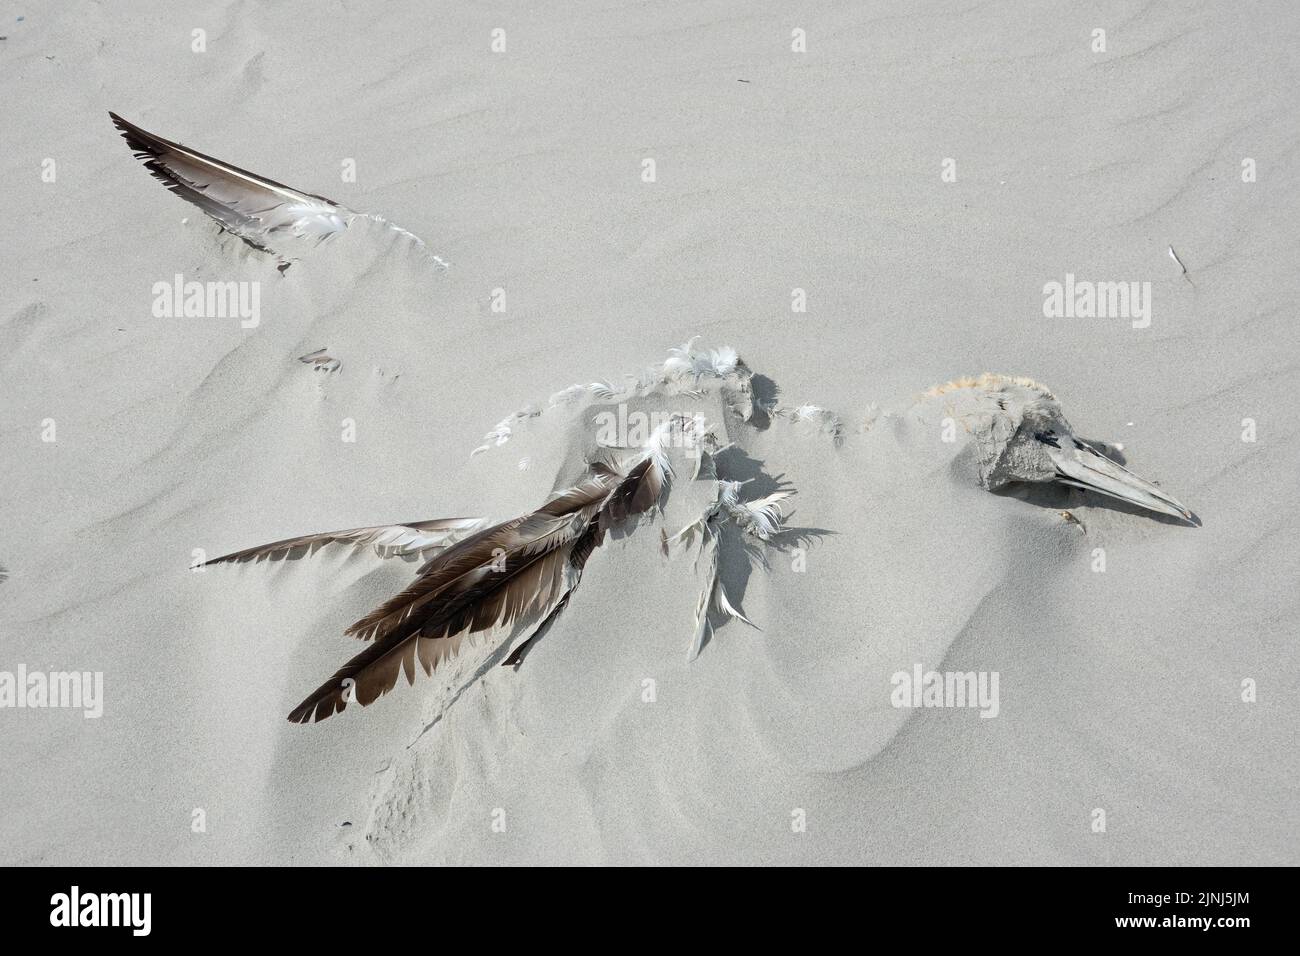 El ganso muerto del norte, probablemente víctima de la gripe aviar, se lavó en la playa y parcialmente enterrado bajo la arena Foto de stock